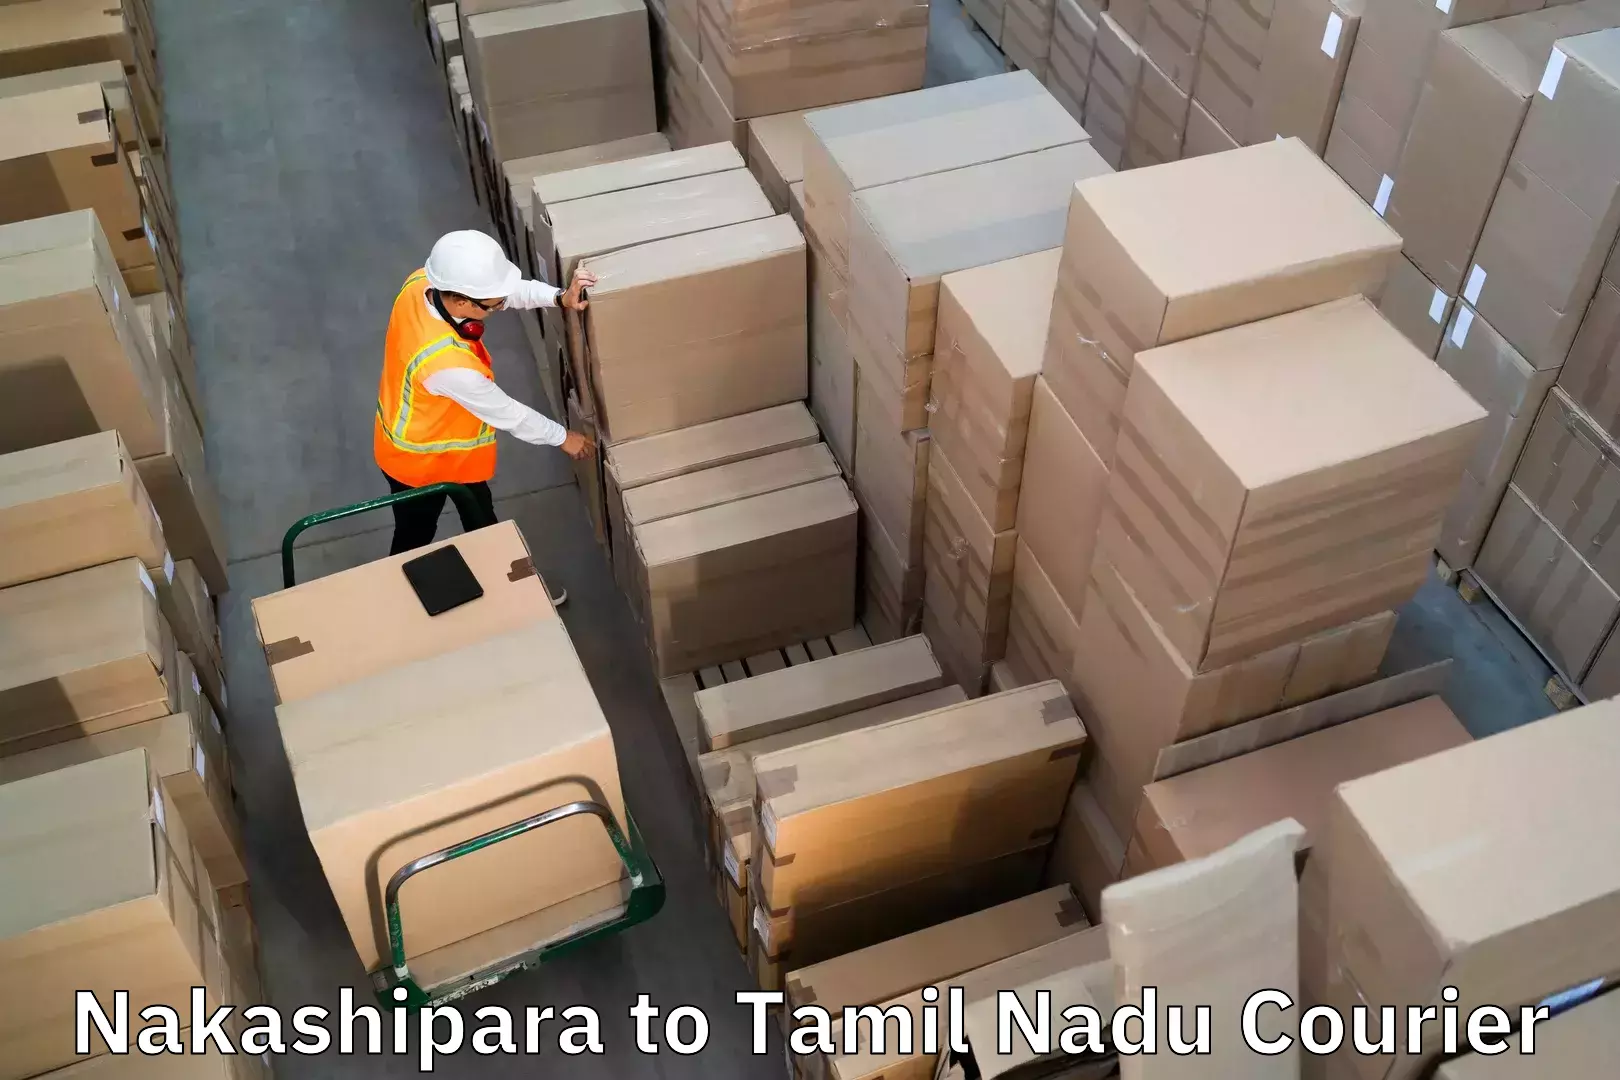 Personalized luggage shipping Nakashipara to Ulundurpet